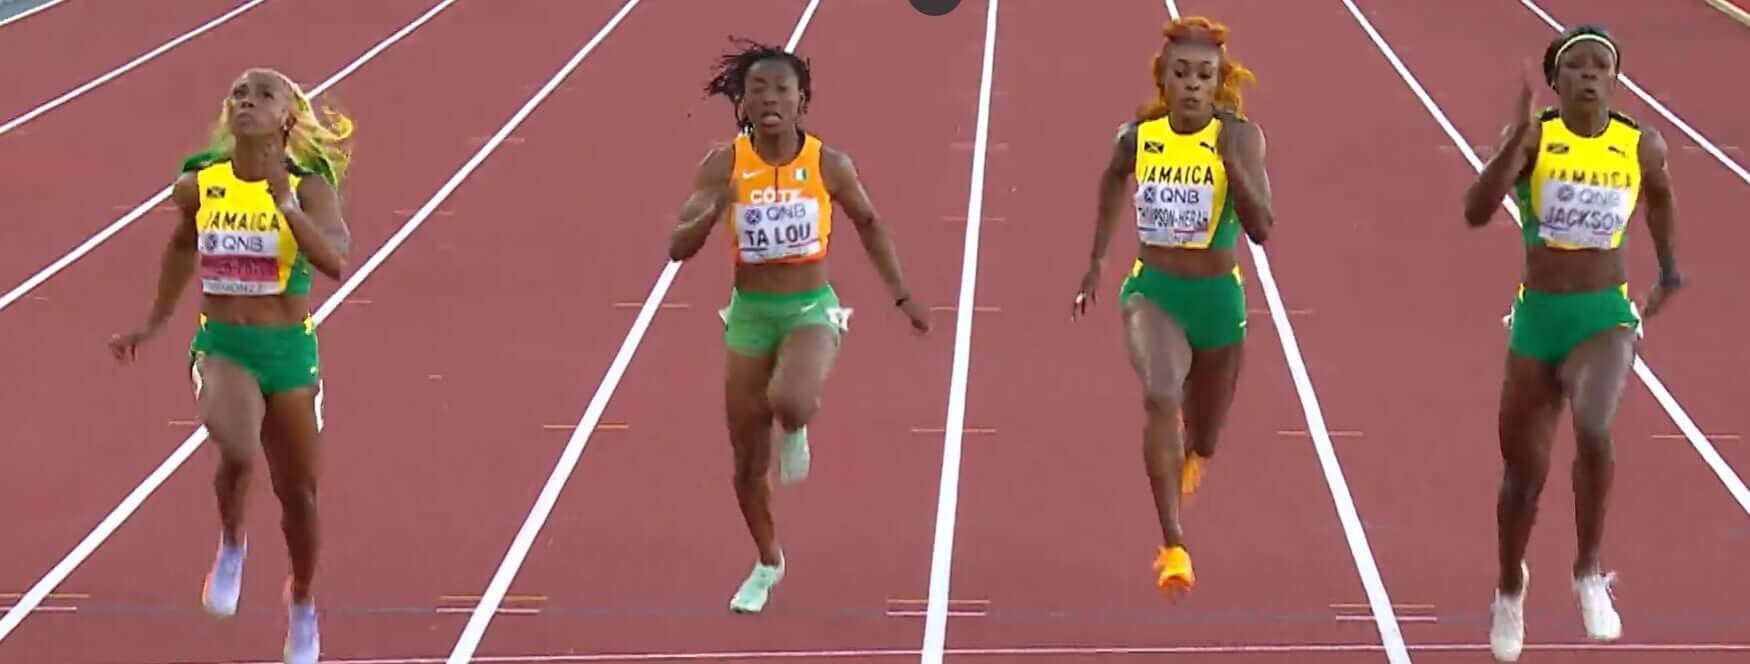 100 m dames/Mondiaux – Les Jamaïcaines écrasent la concurrence, Ta Lou sans défenses 7e, Ahouré out en demie